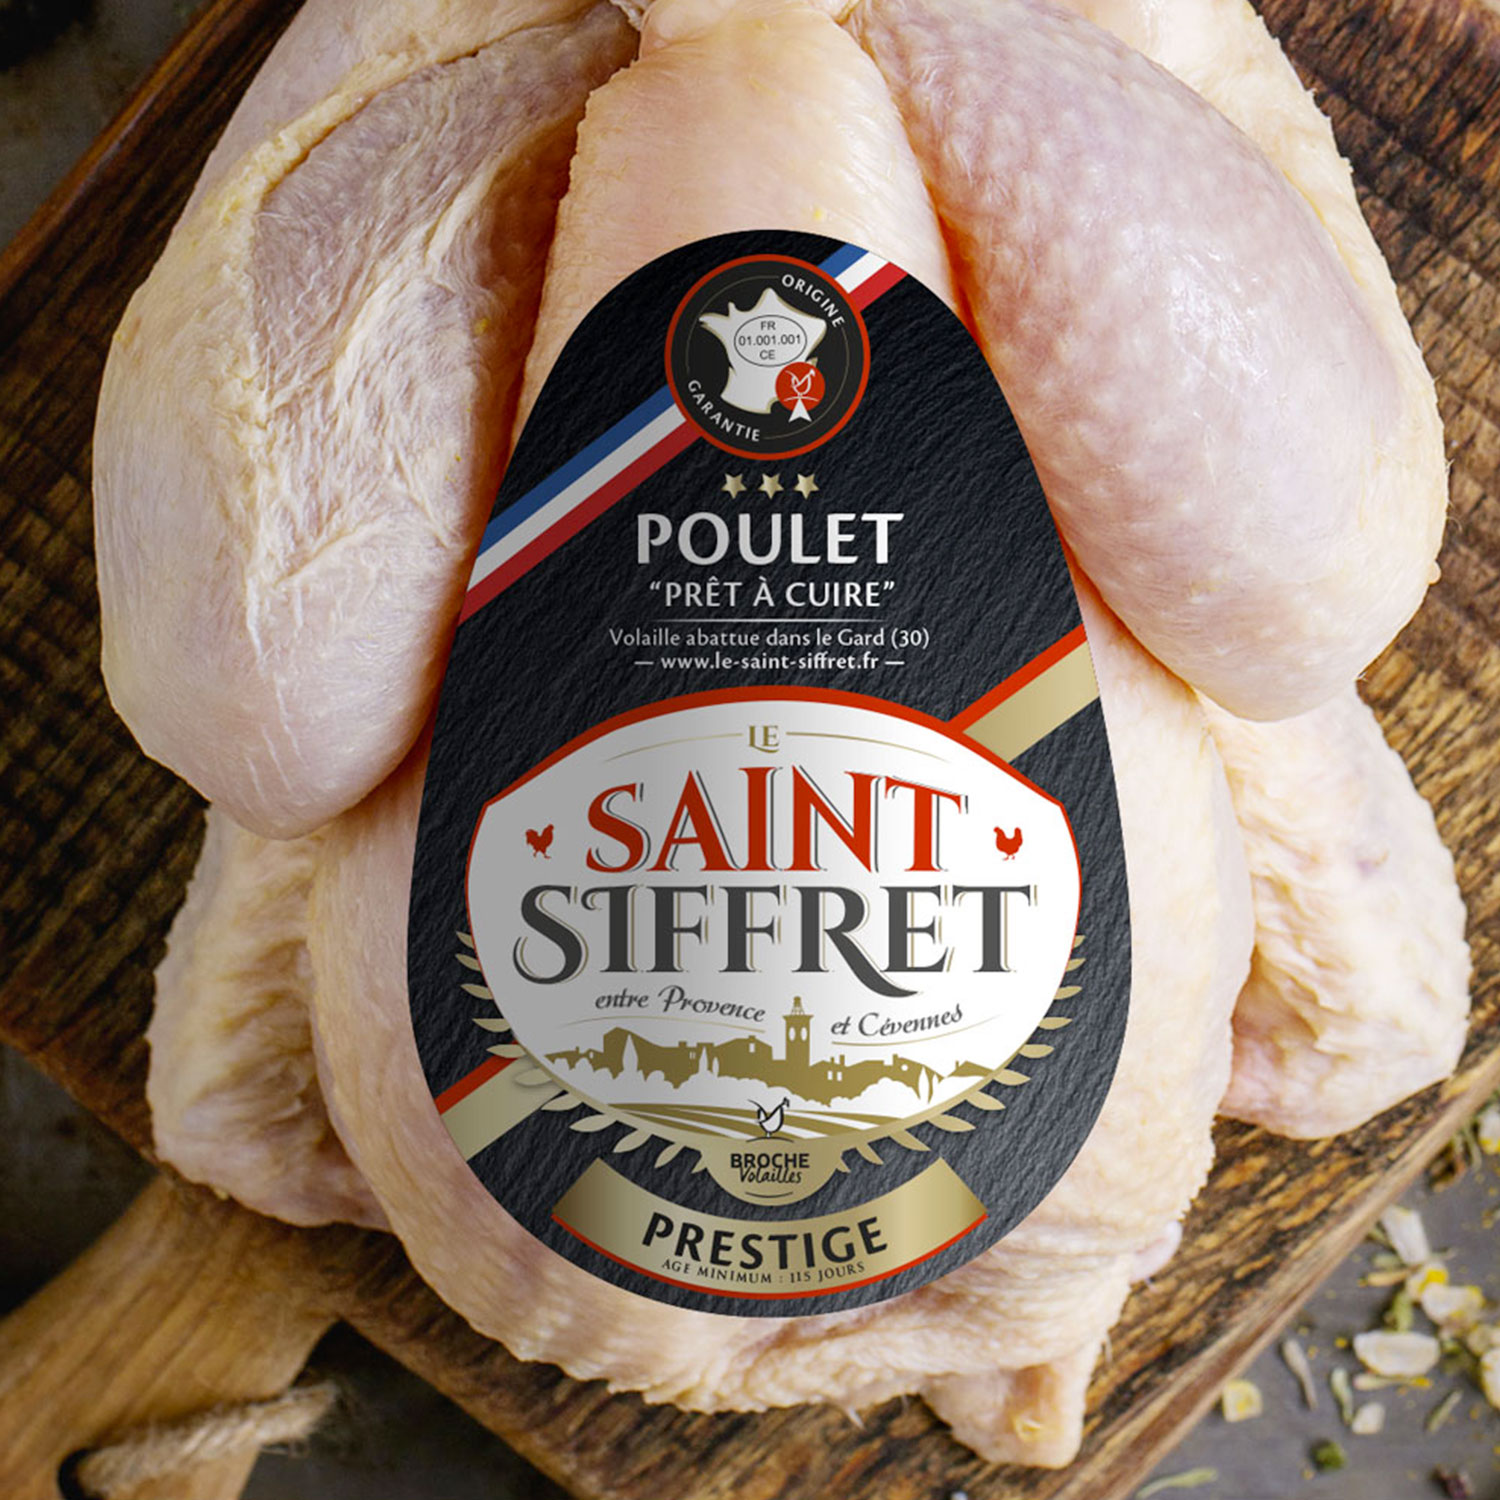 Le Saint Siffret - etiquette poulet "prêt à cuire"